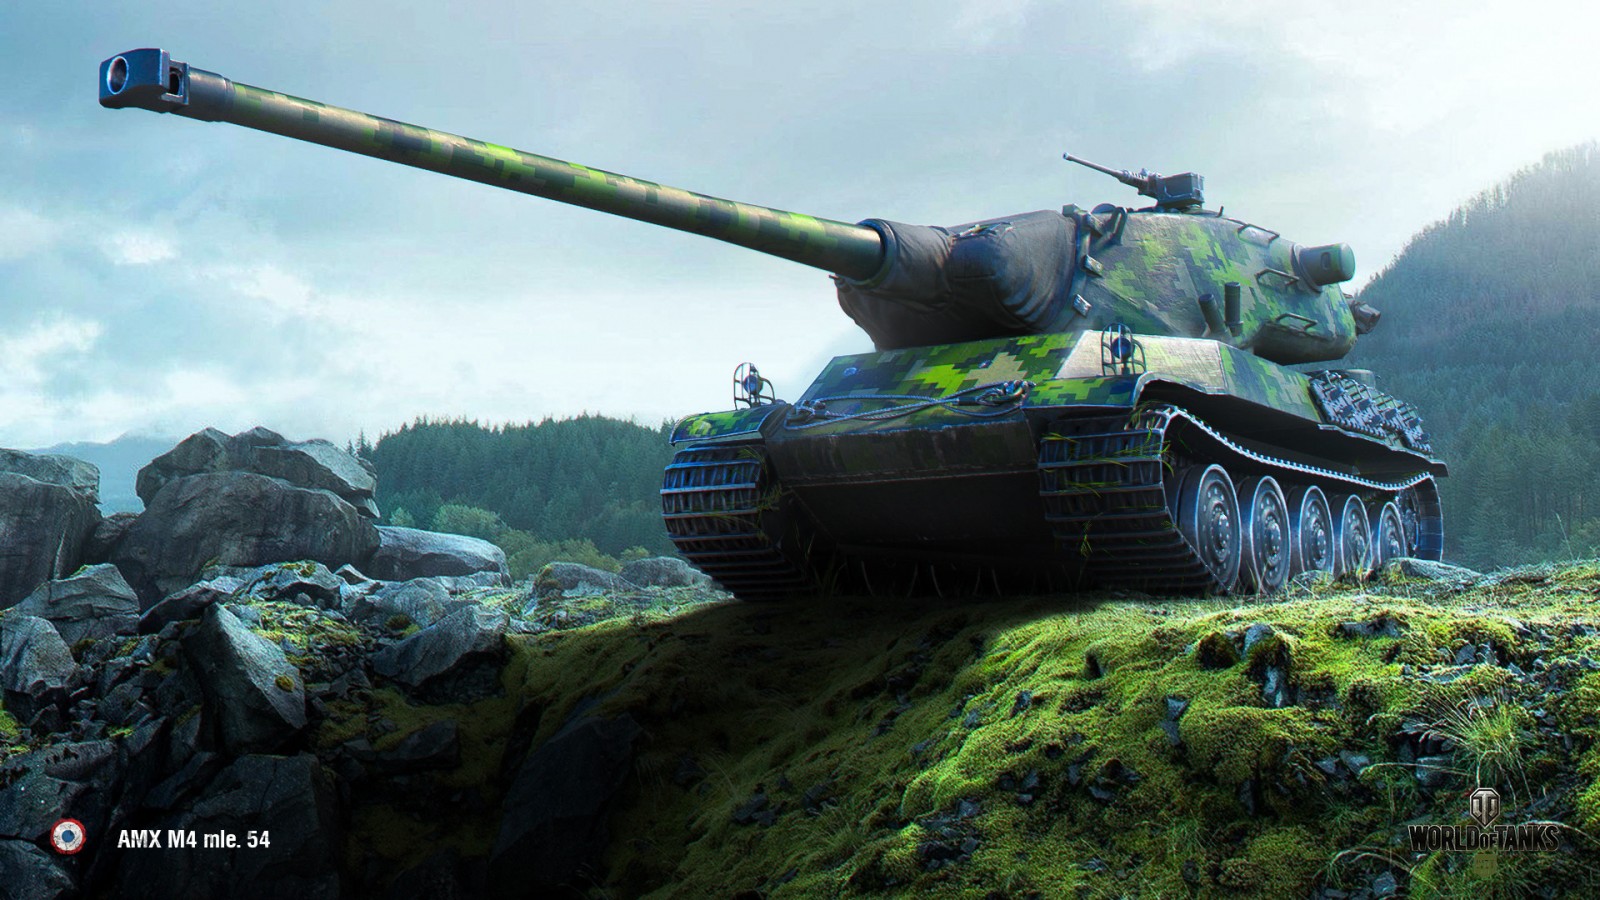 AMX 65 t, AMX M4 mle. 51, AMX M4 mle. 54 понерфили в обход супертеста.